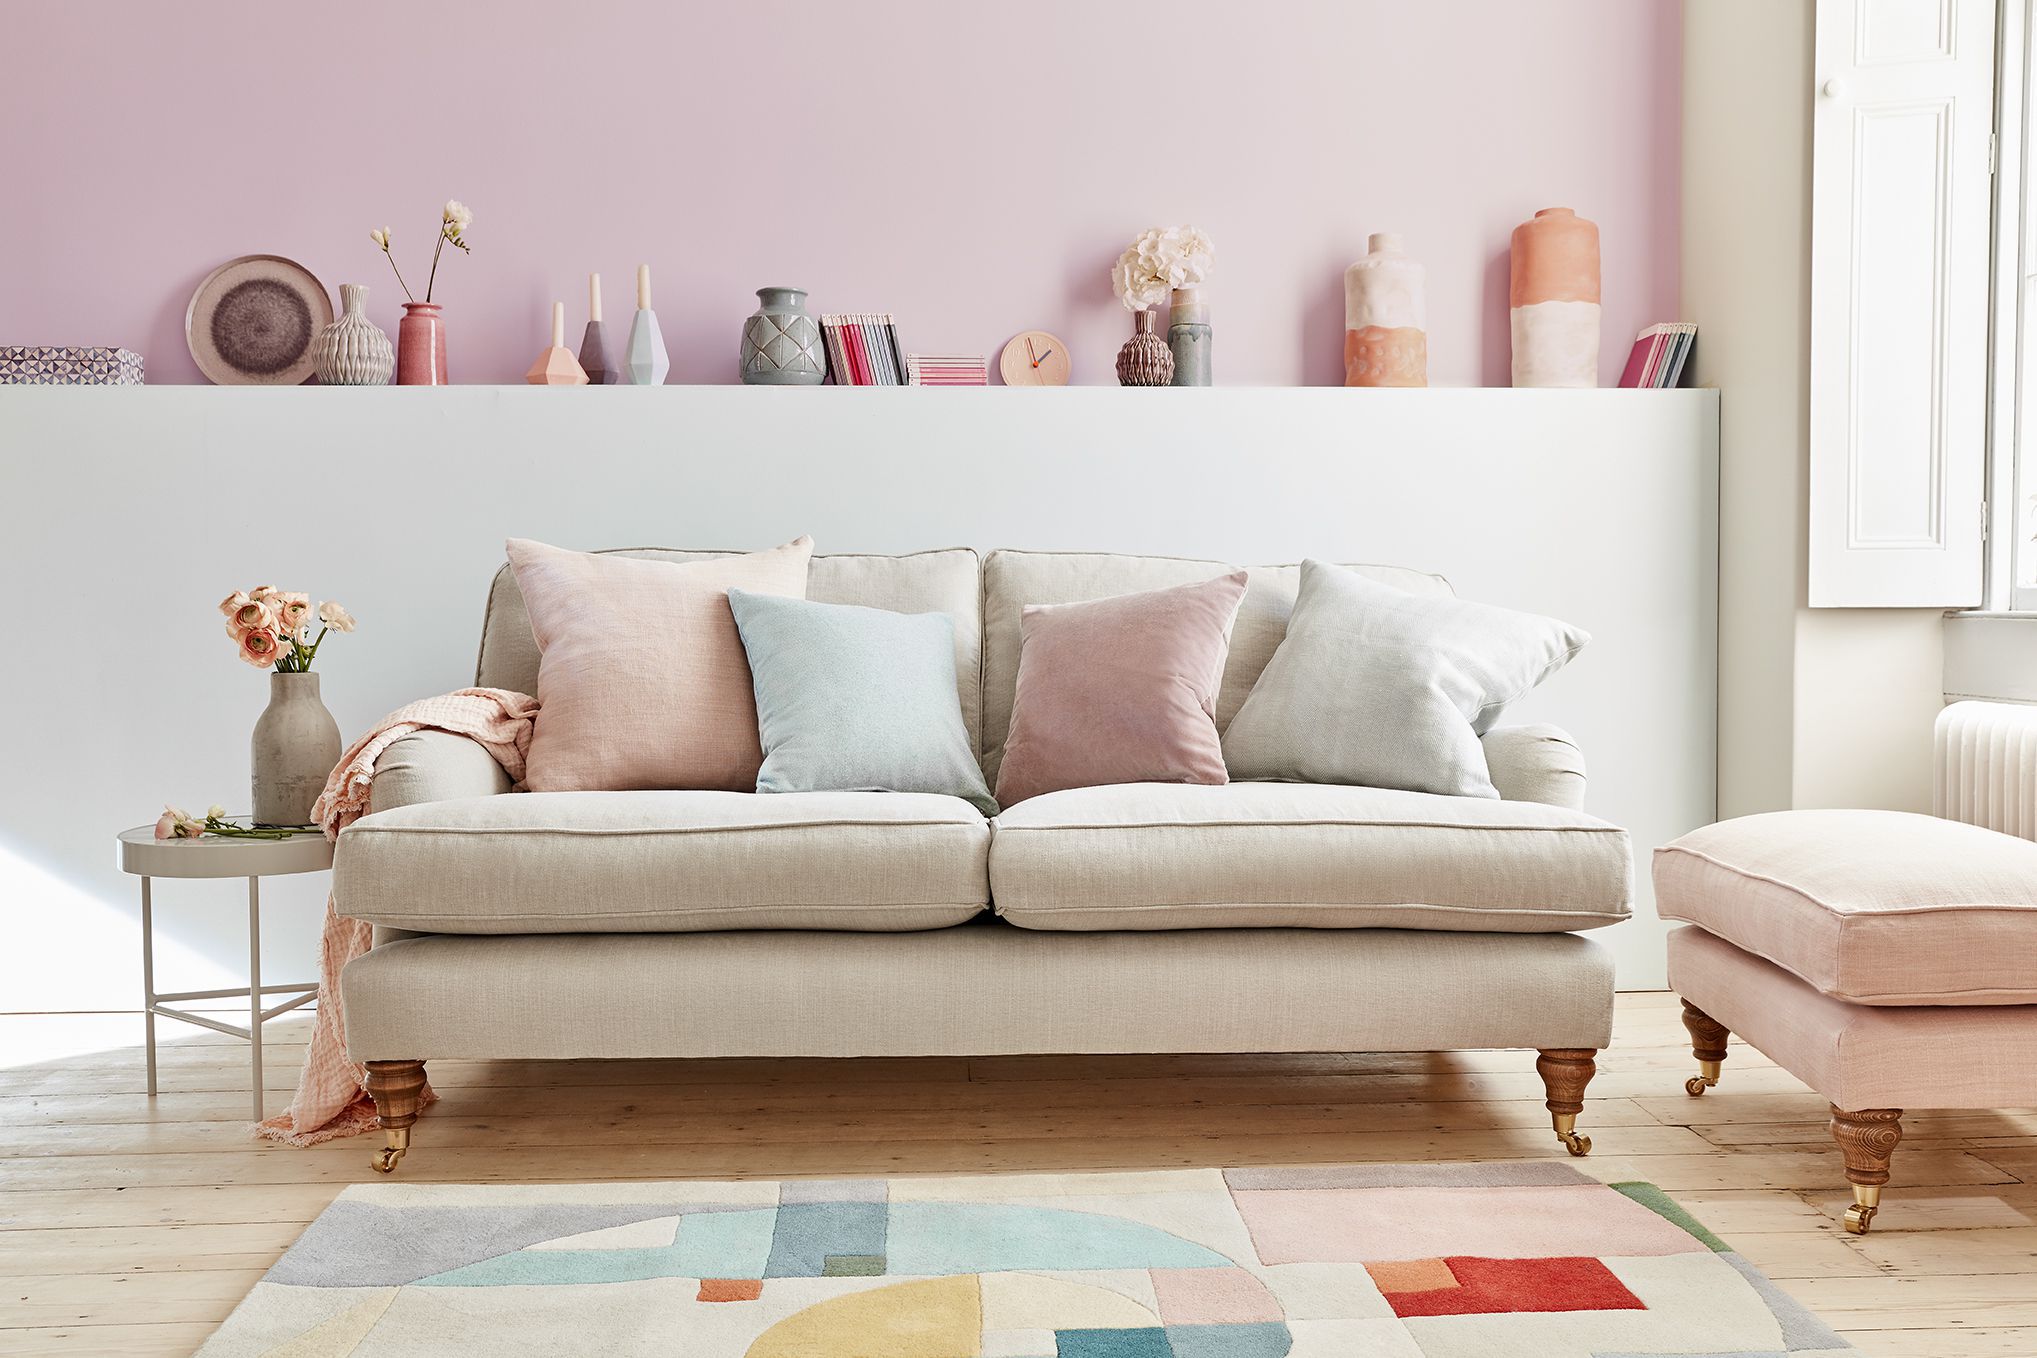 Bluebell Pavilion Pink Brushstroke Sofa - 2.5 Seater